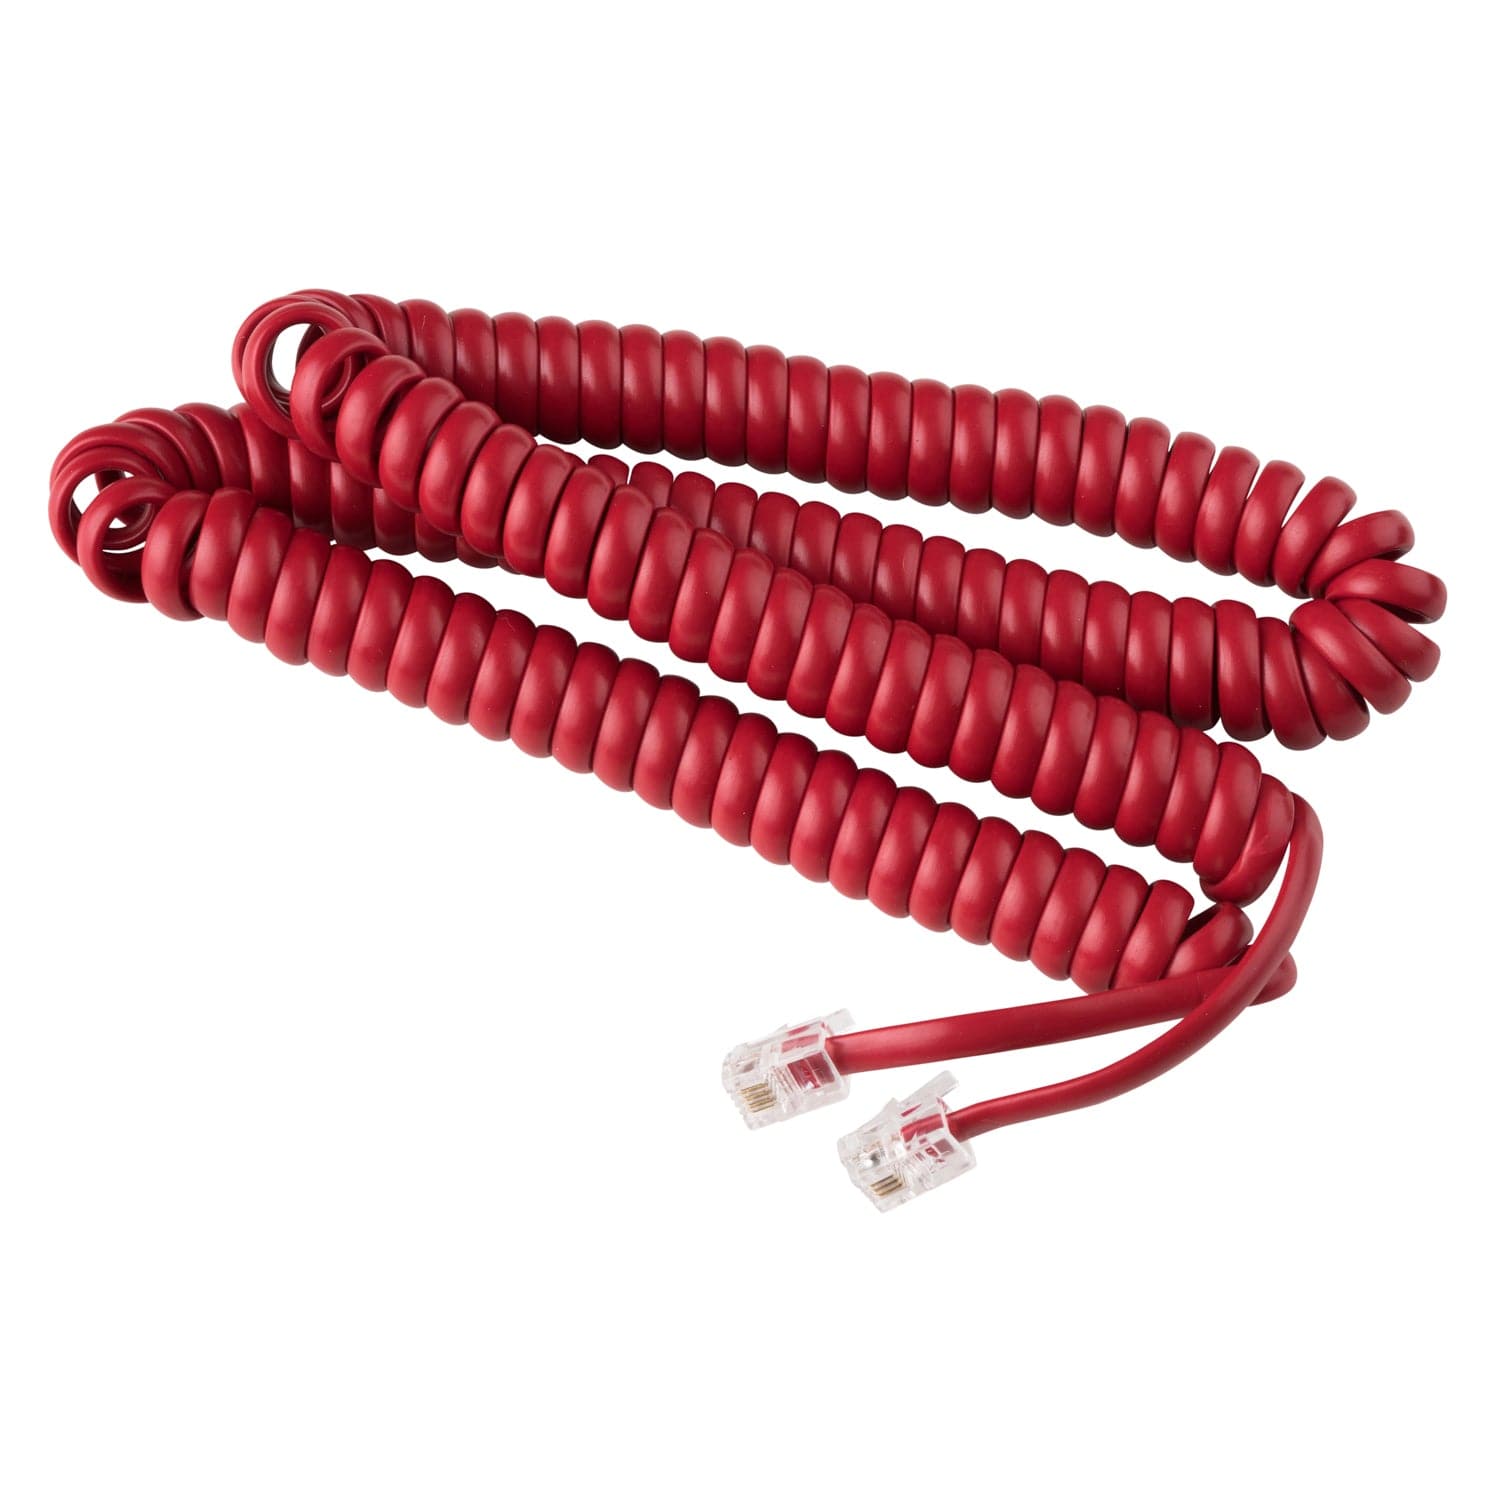 15 ft Telephone Handset Cord for Landline Phone - Crimson Red - USA Trading Depot, LLC